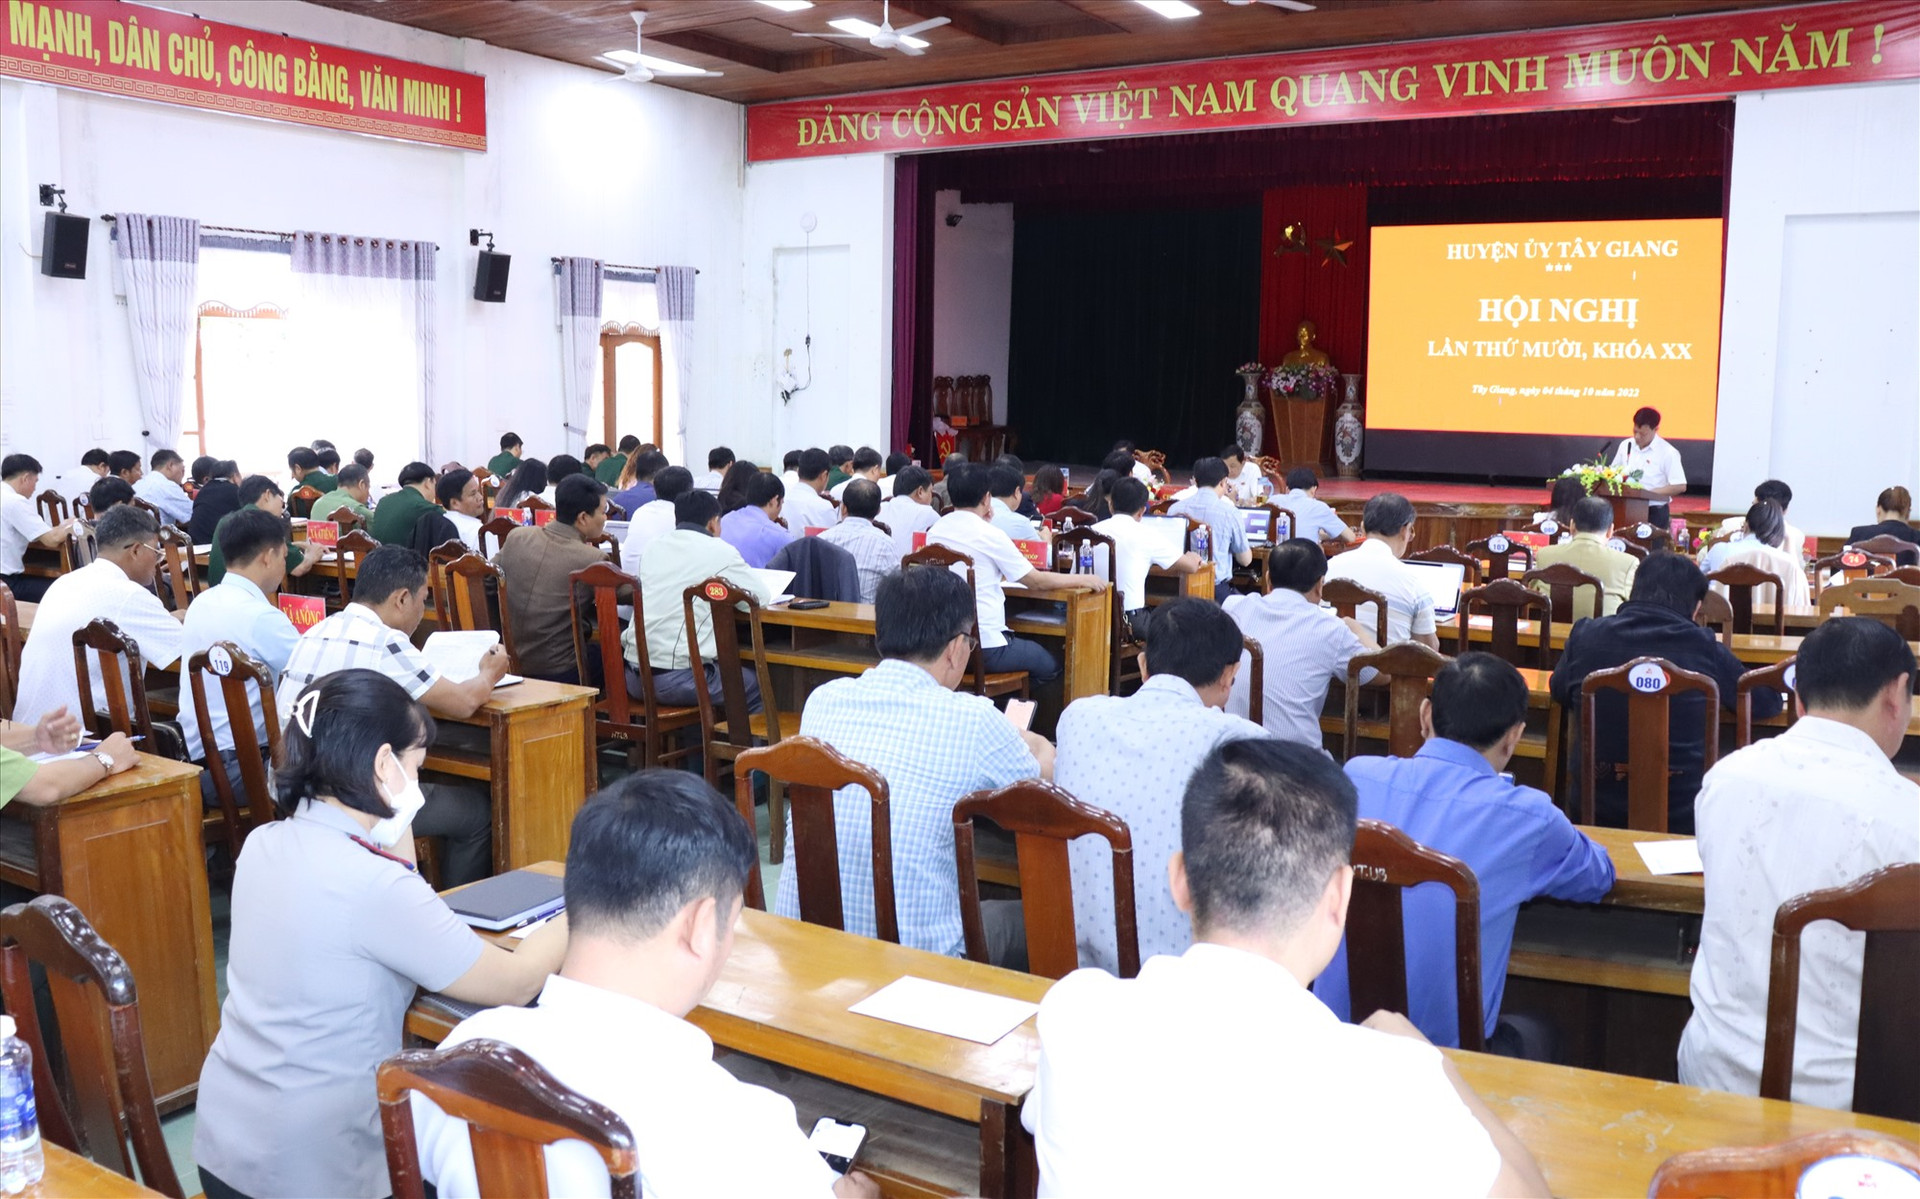 Huyện ủy Tây Giang tổ chức hội nghị lần thứ mười, khóa XX, nhiệm kỳ 2020-2025. Ảnh H.Thúy